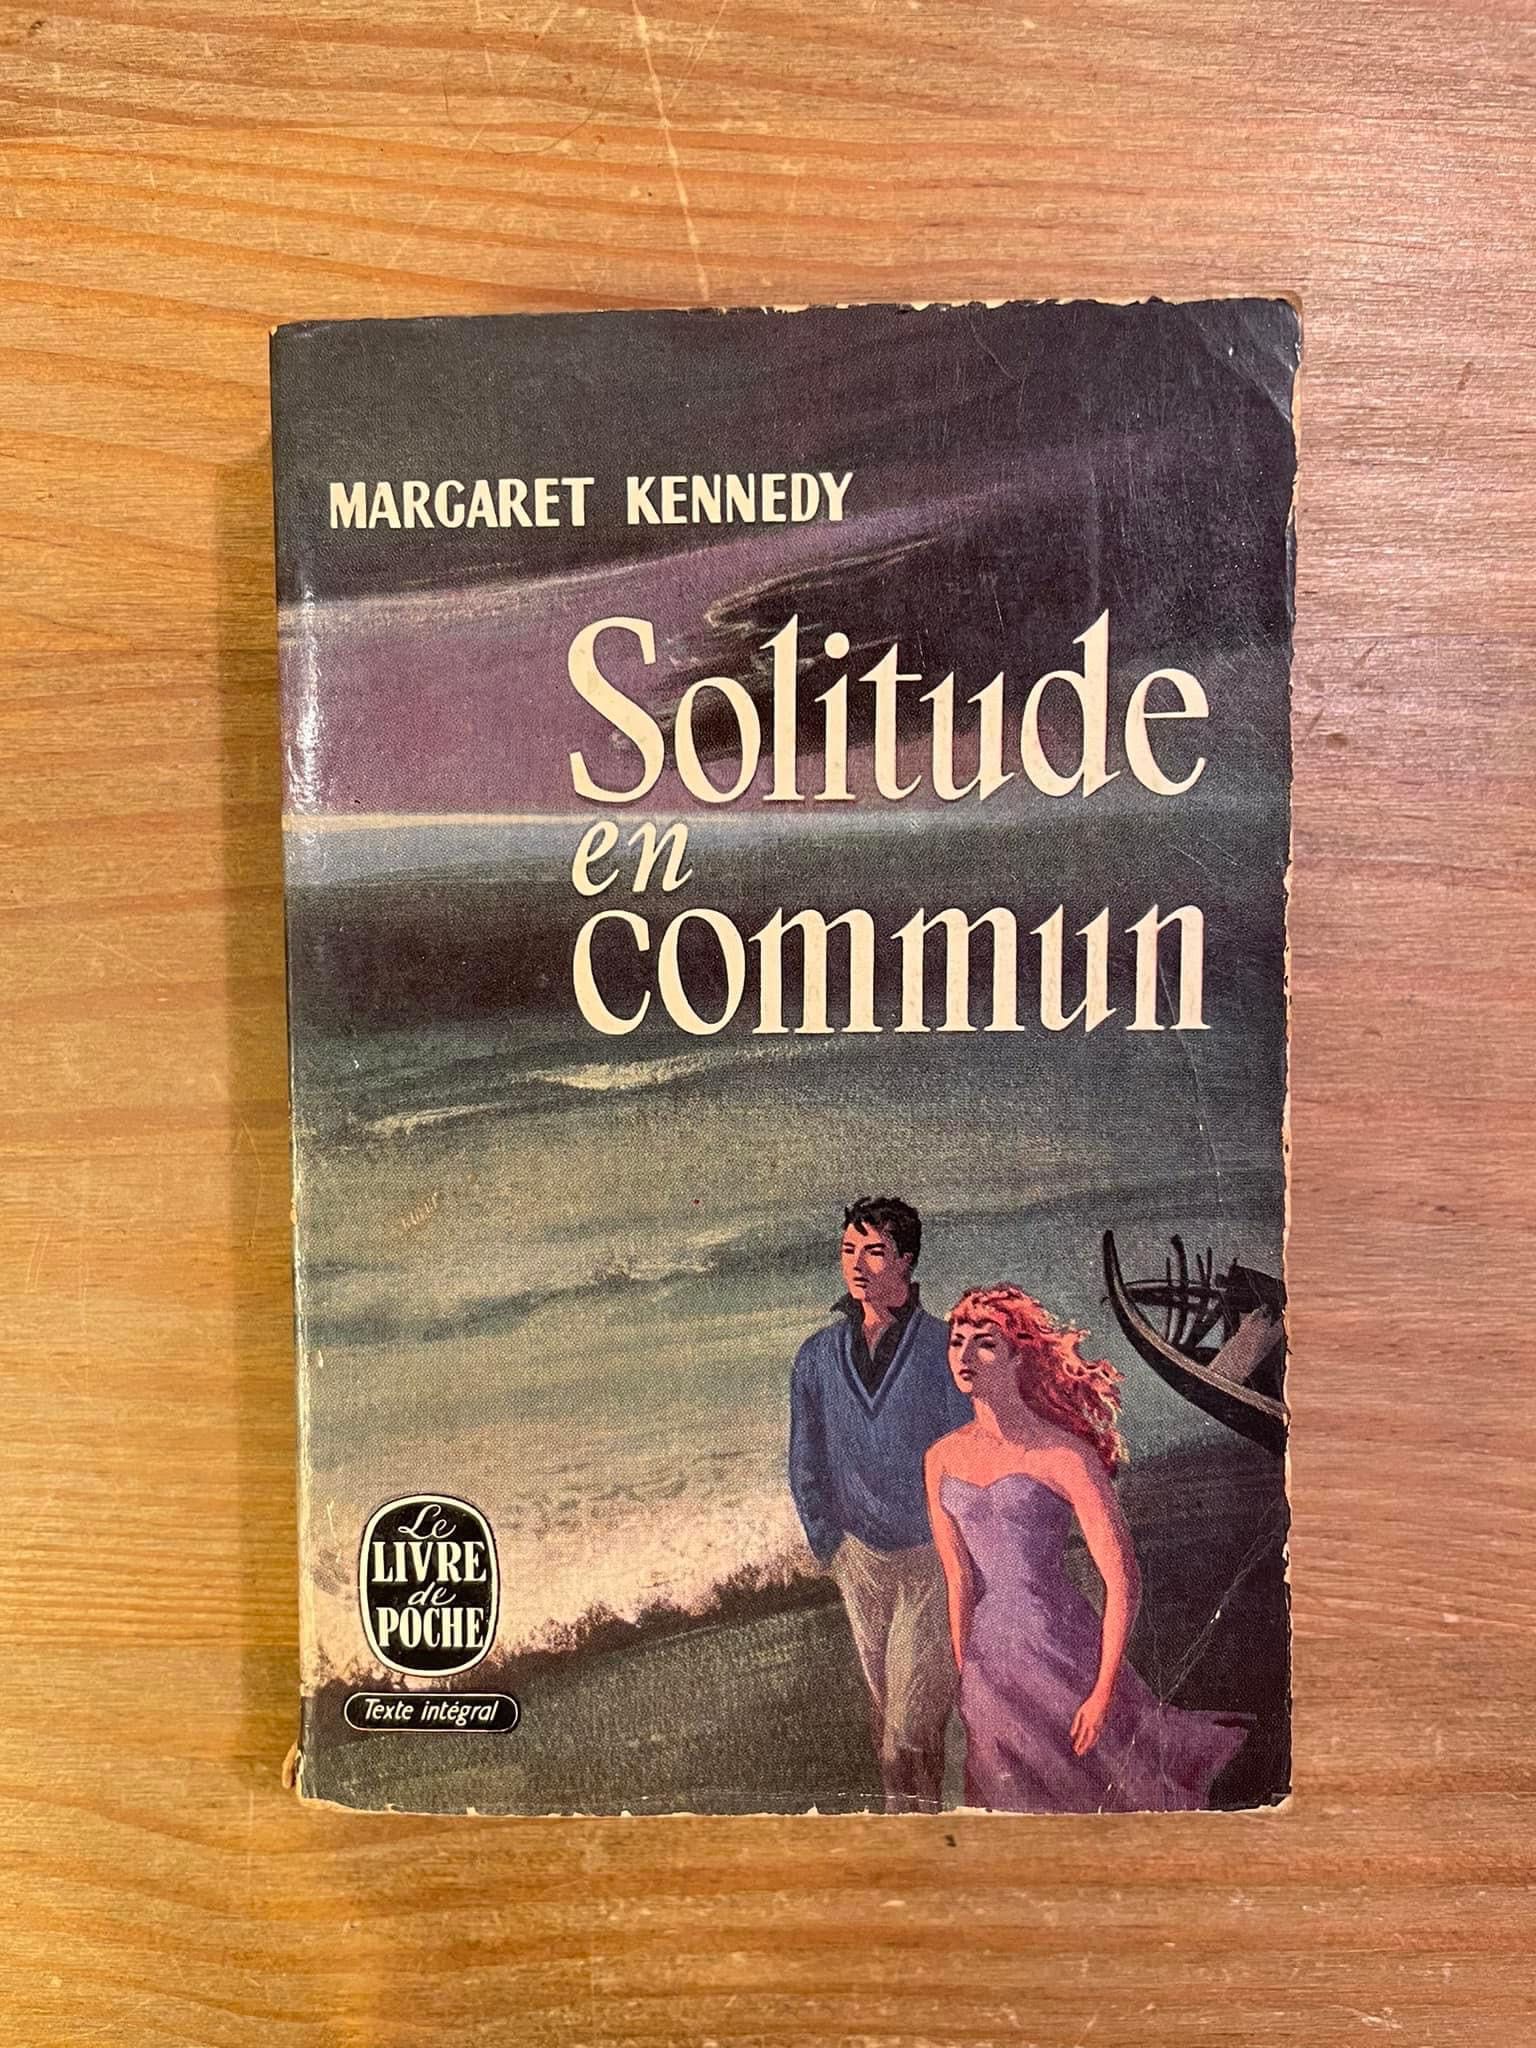 Solitude en Commun - Margaret Kennedy (portes grátis)